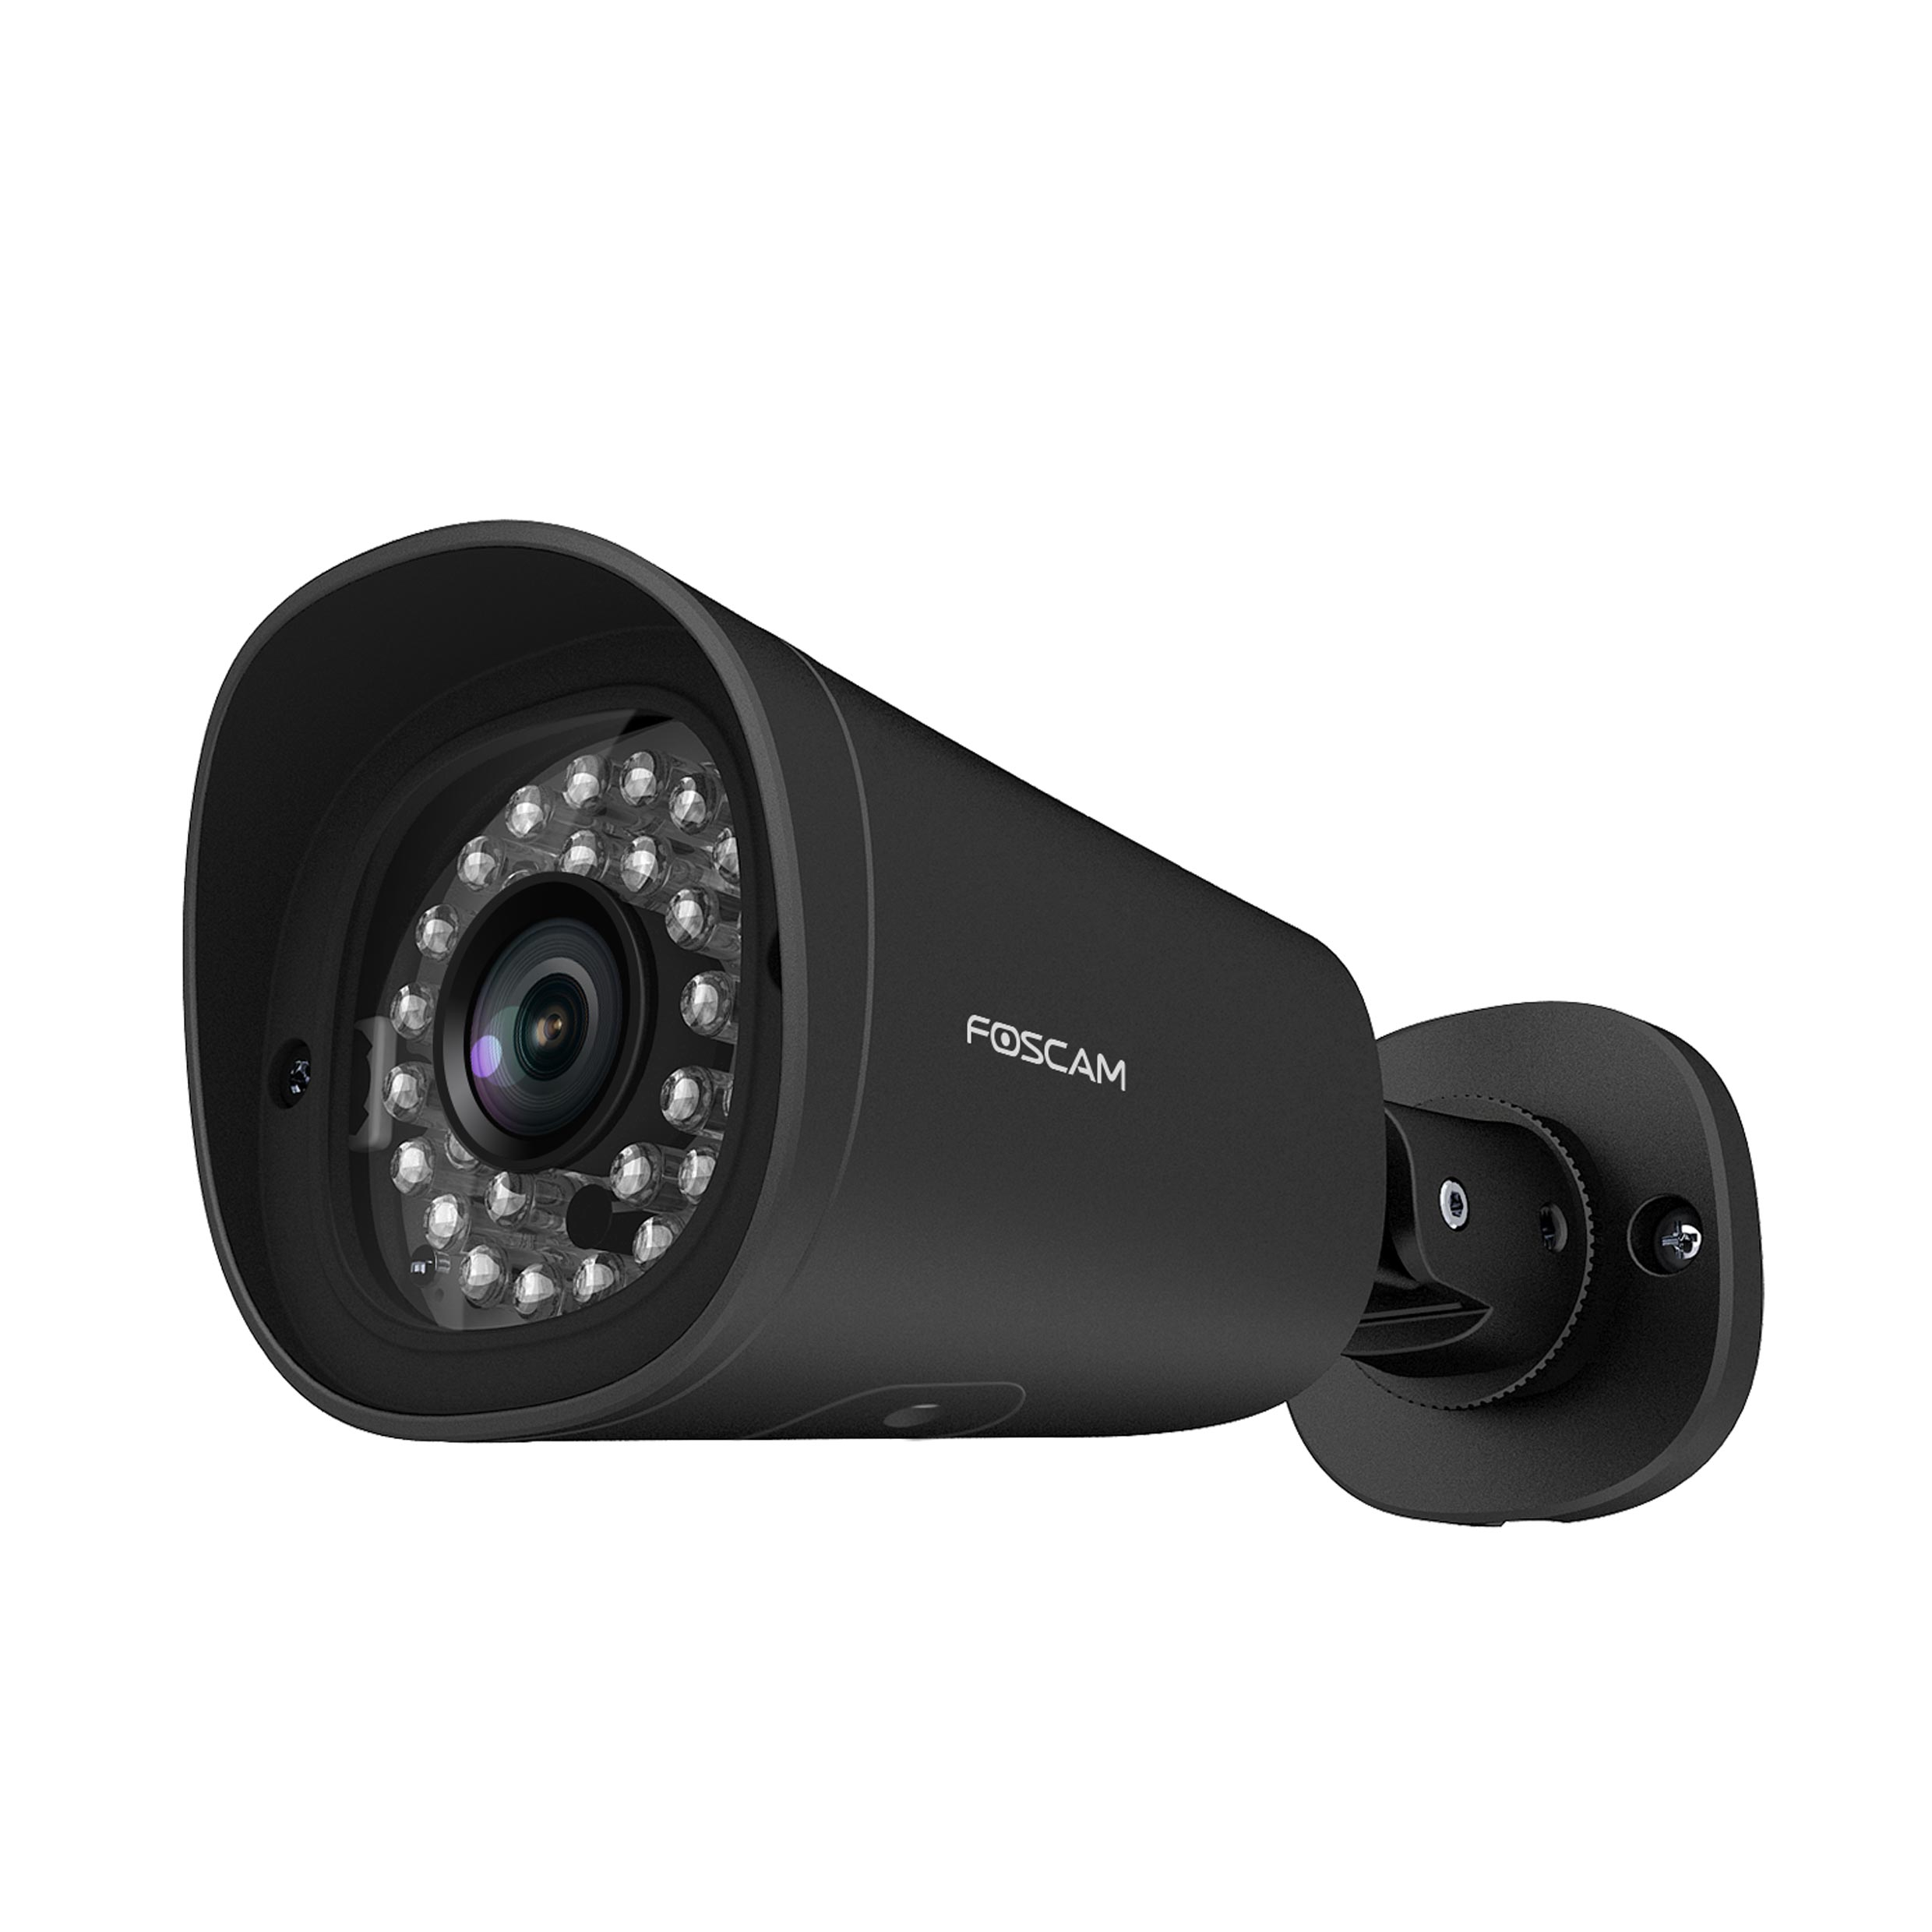 2304 x Auflösung Überwachungskamera, (schwarz), 1536 FOSCAM pixels G4EP Video: